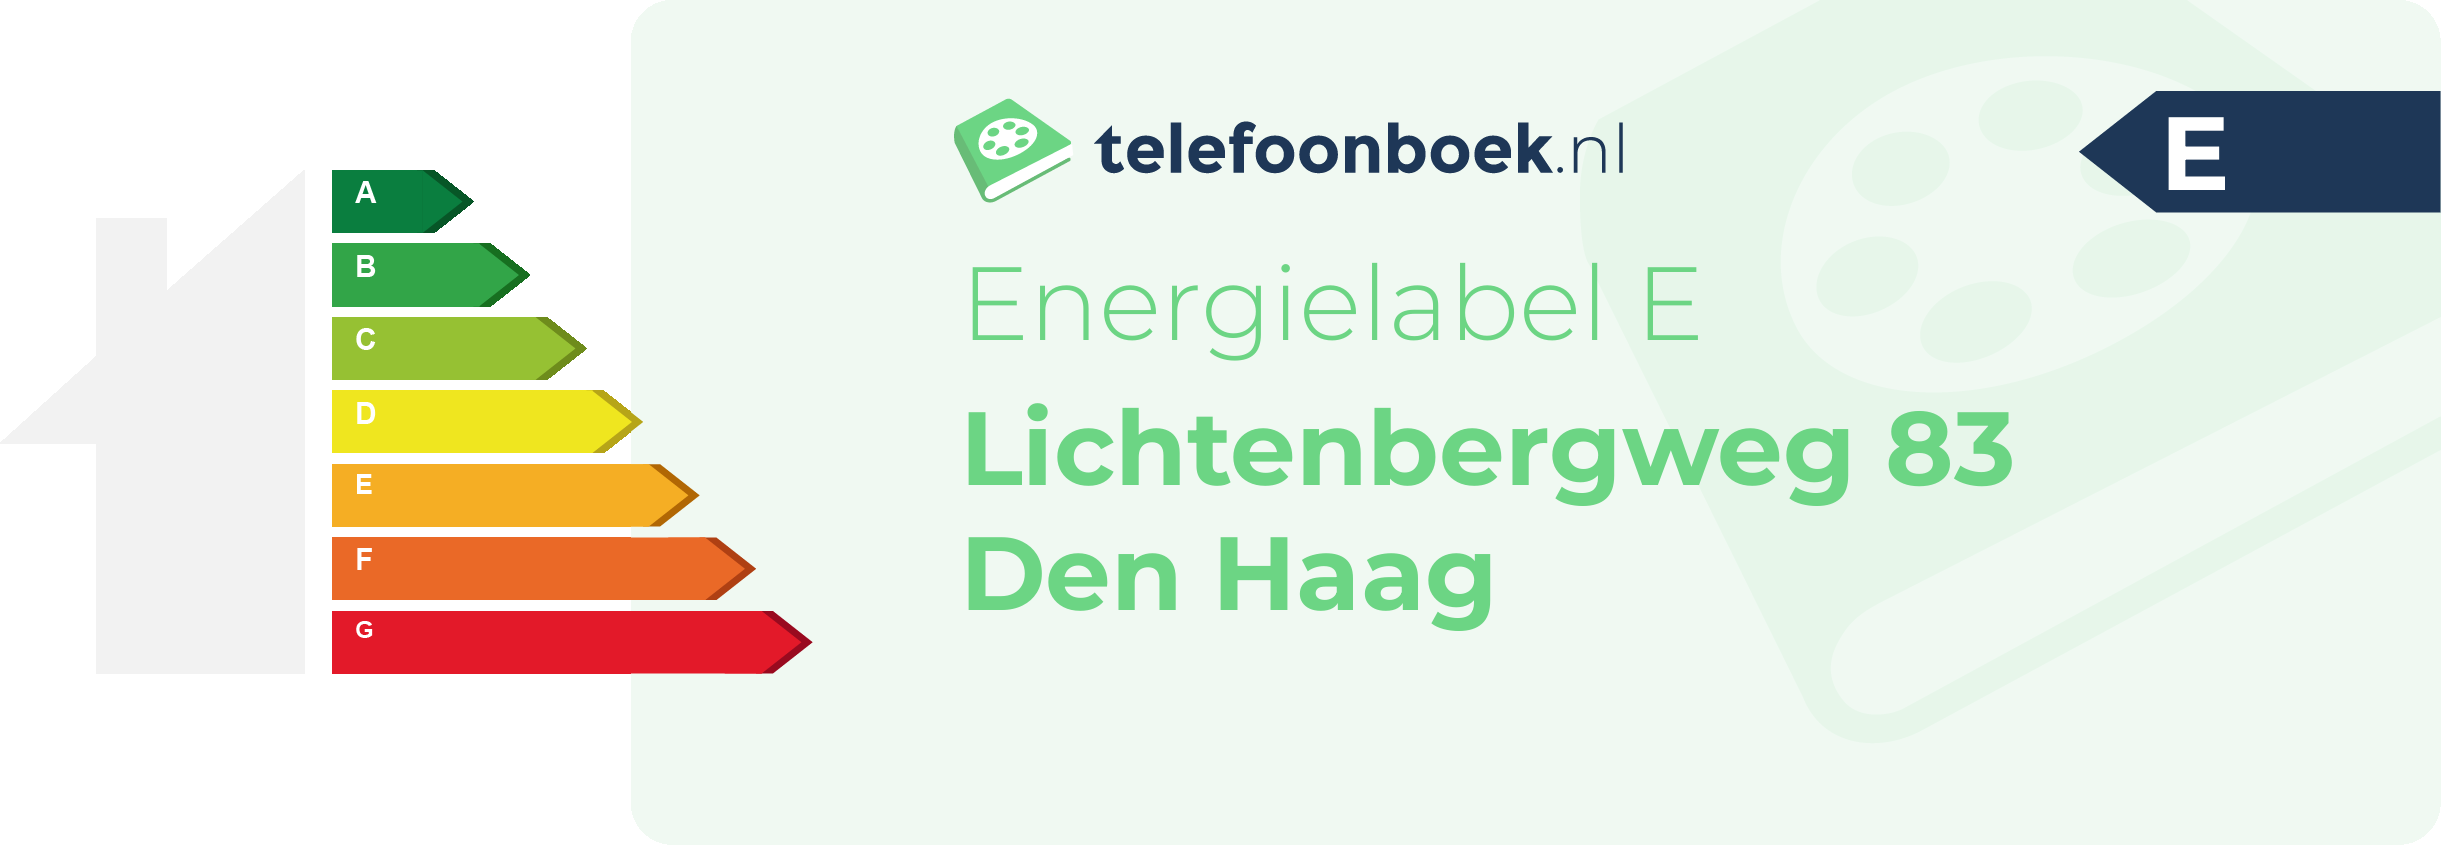 Energielabel Lichtenbergweg 83 Den Haag